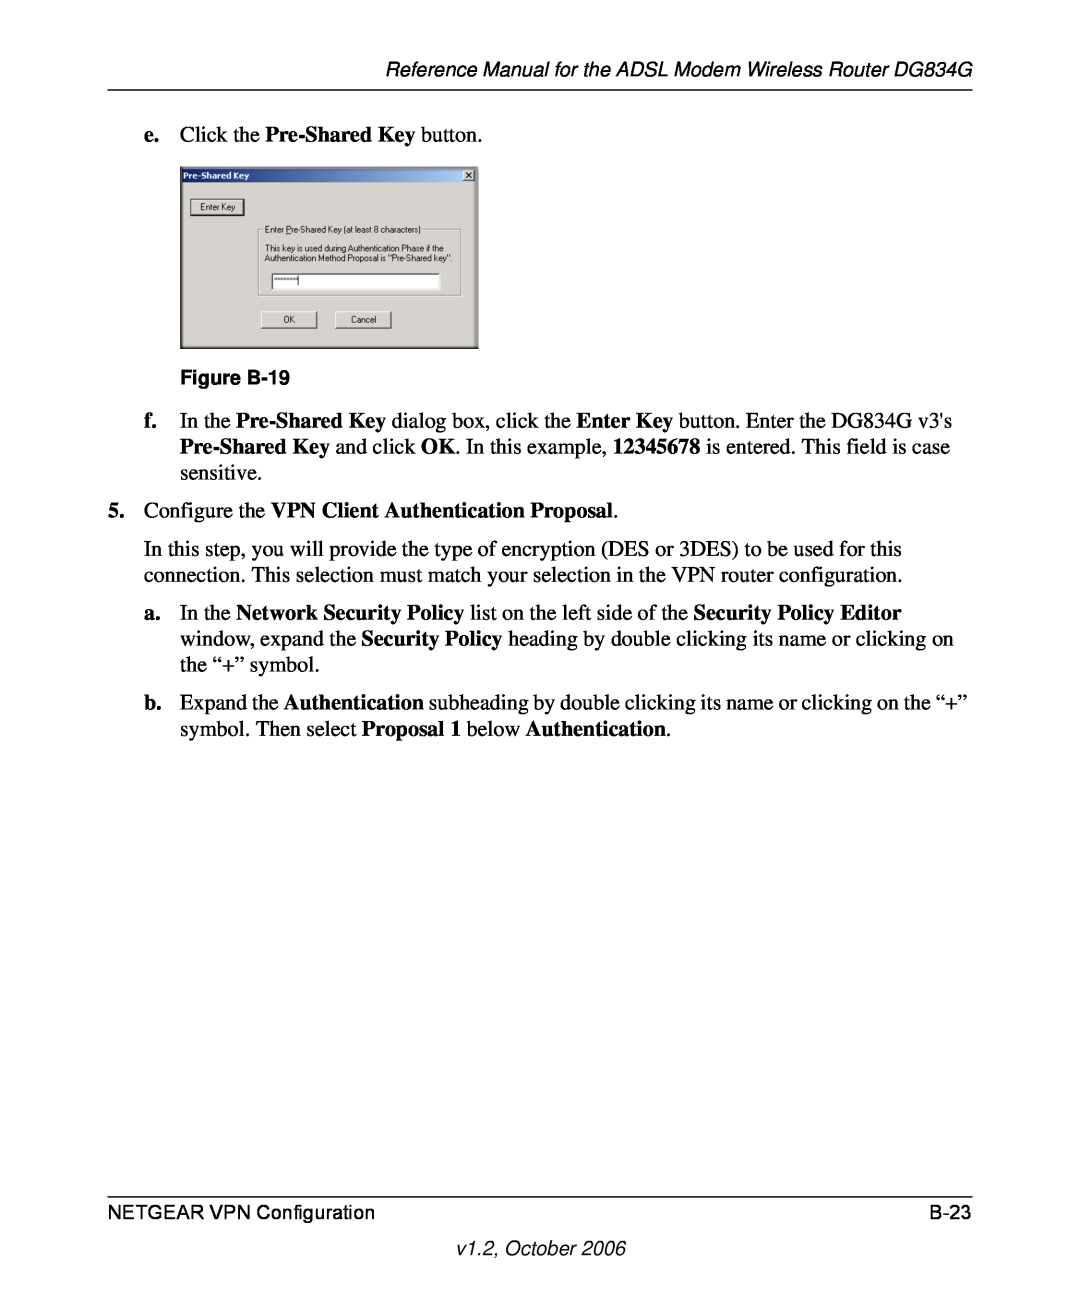 NETGEAR DG834G manual Configure the VPN Client Authentication Proposal, Figure B-19 